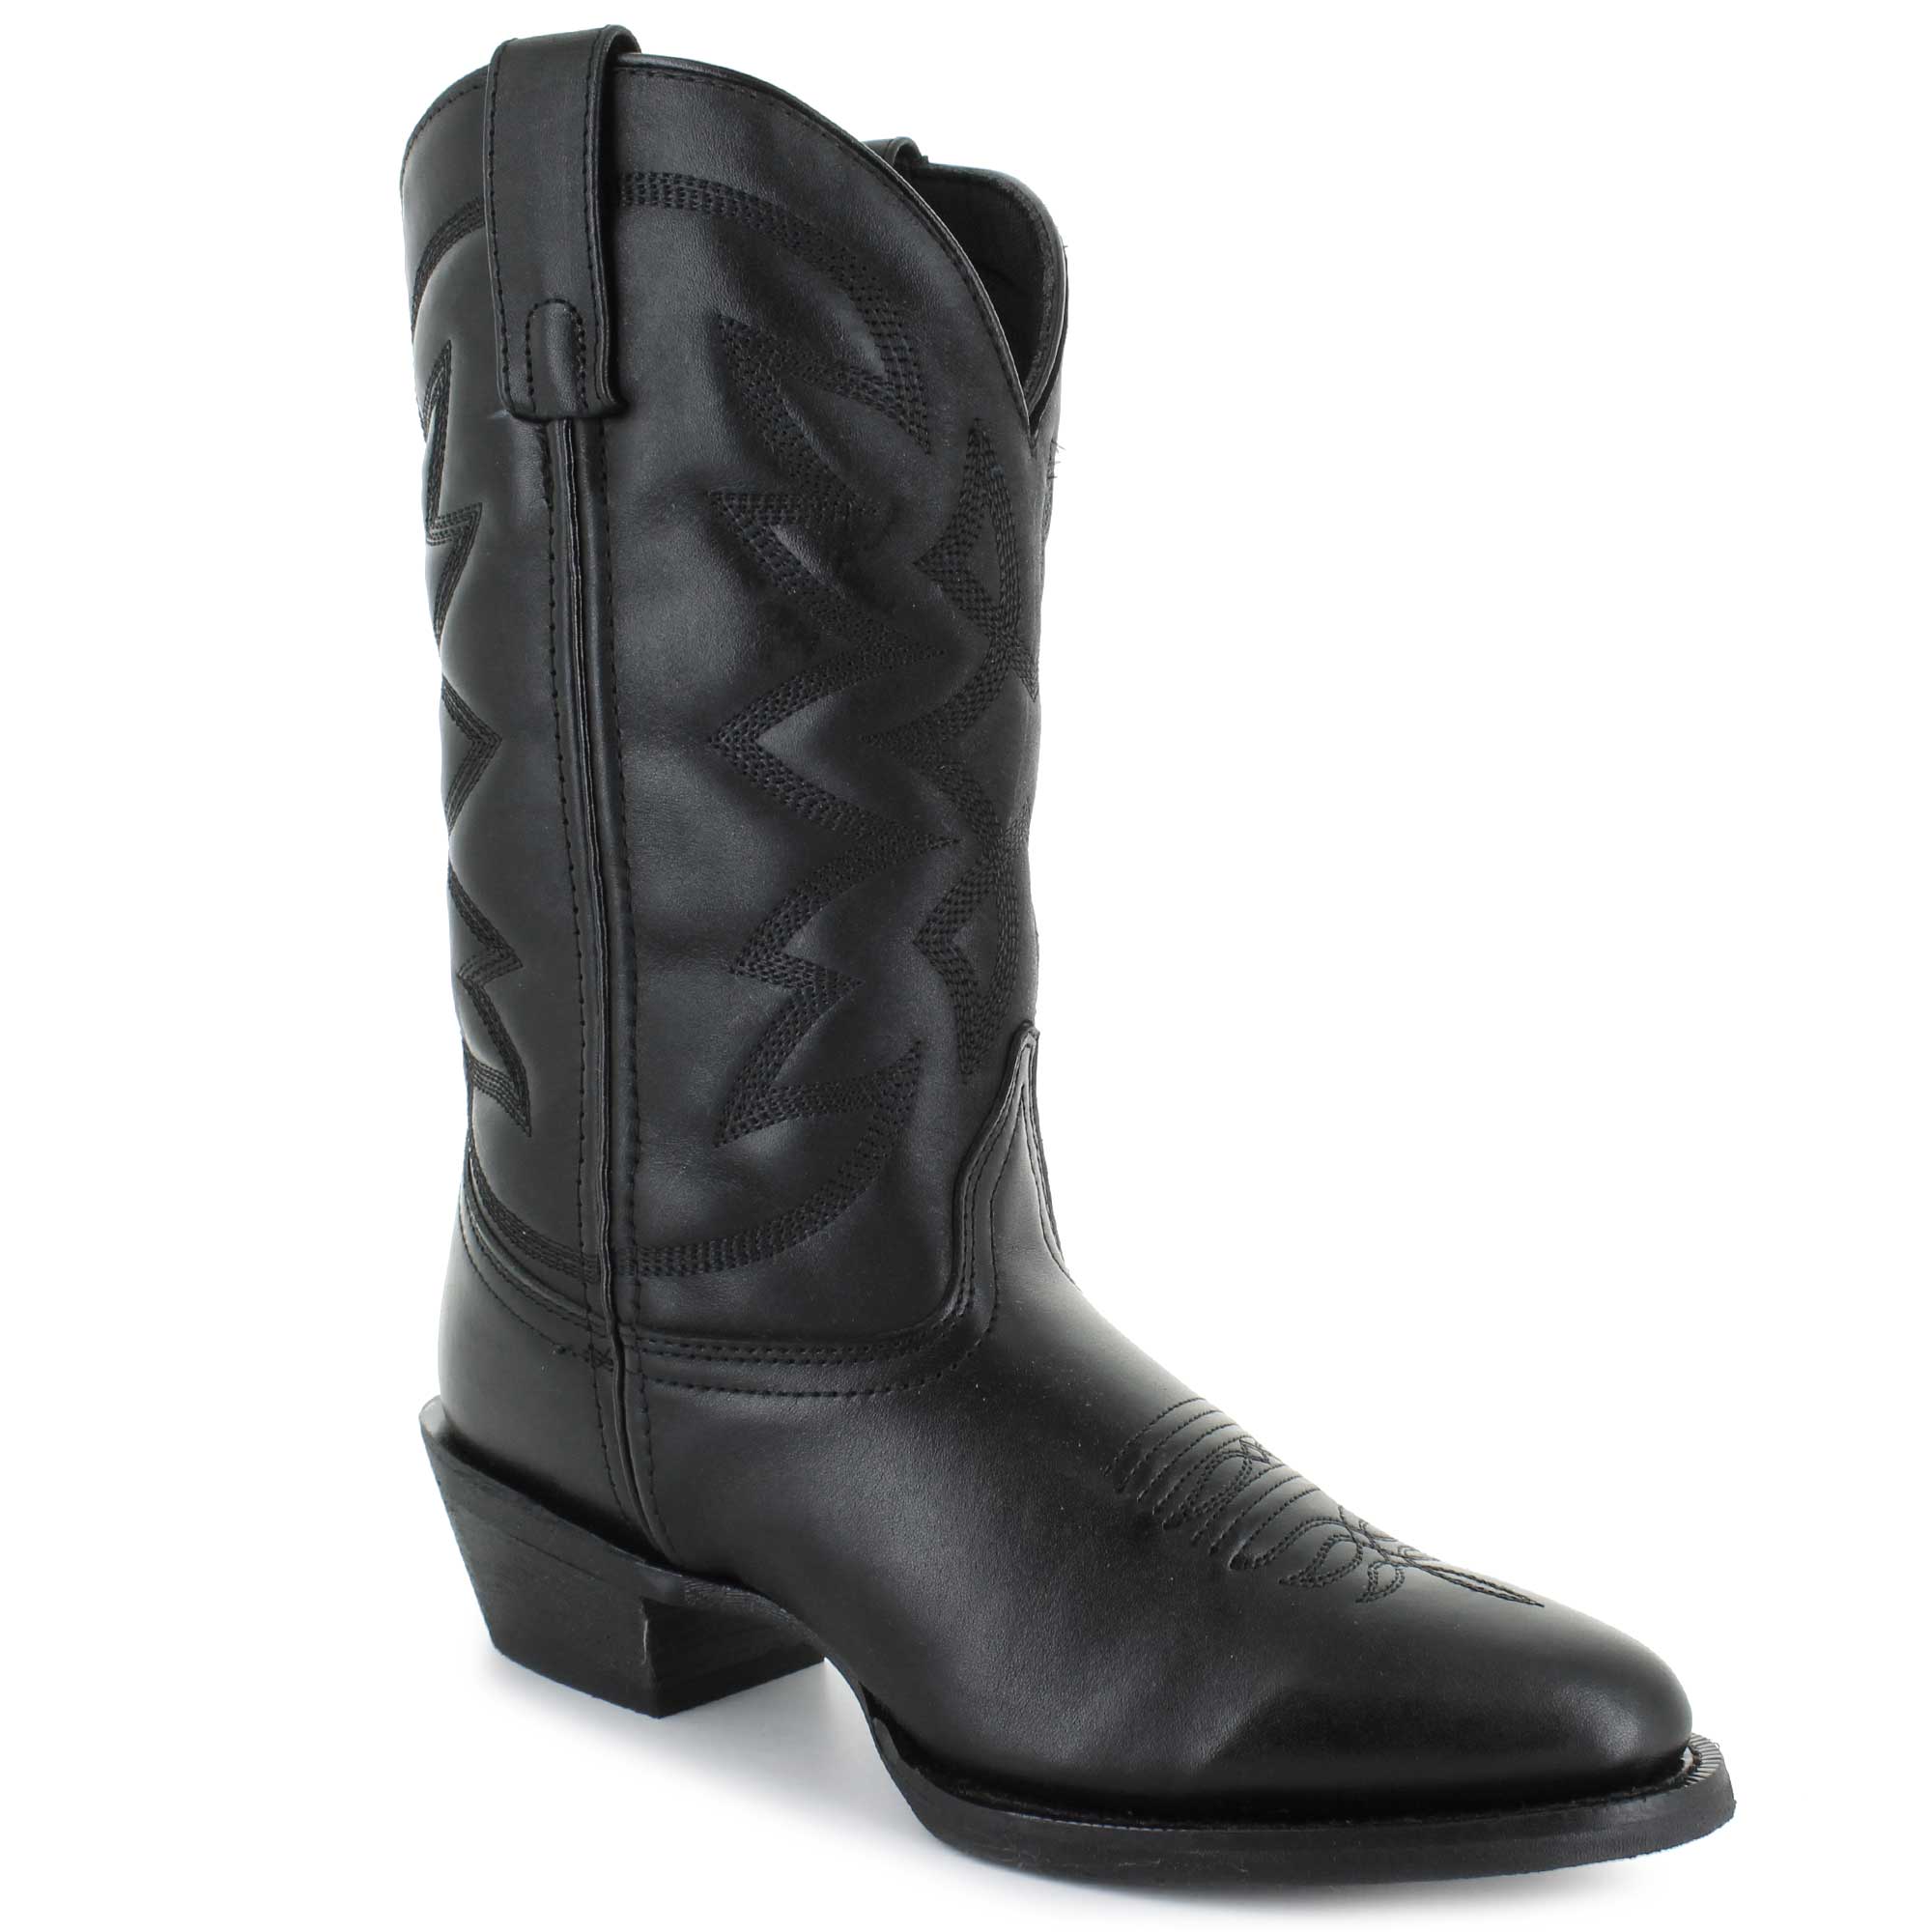 Women's Boots | Shop Now at SHOE SHOW MEGA